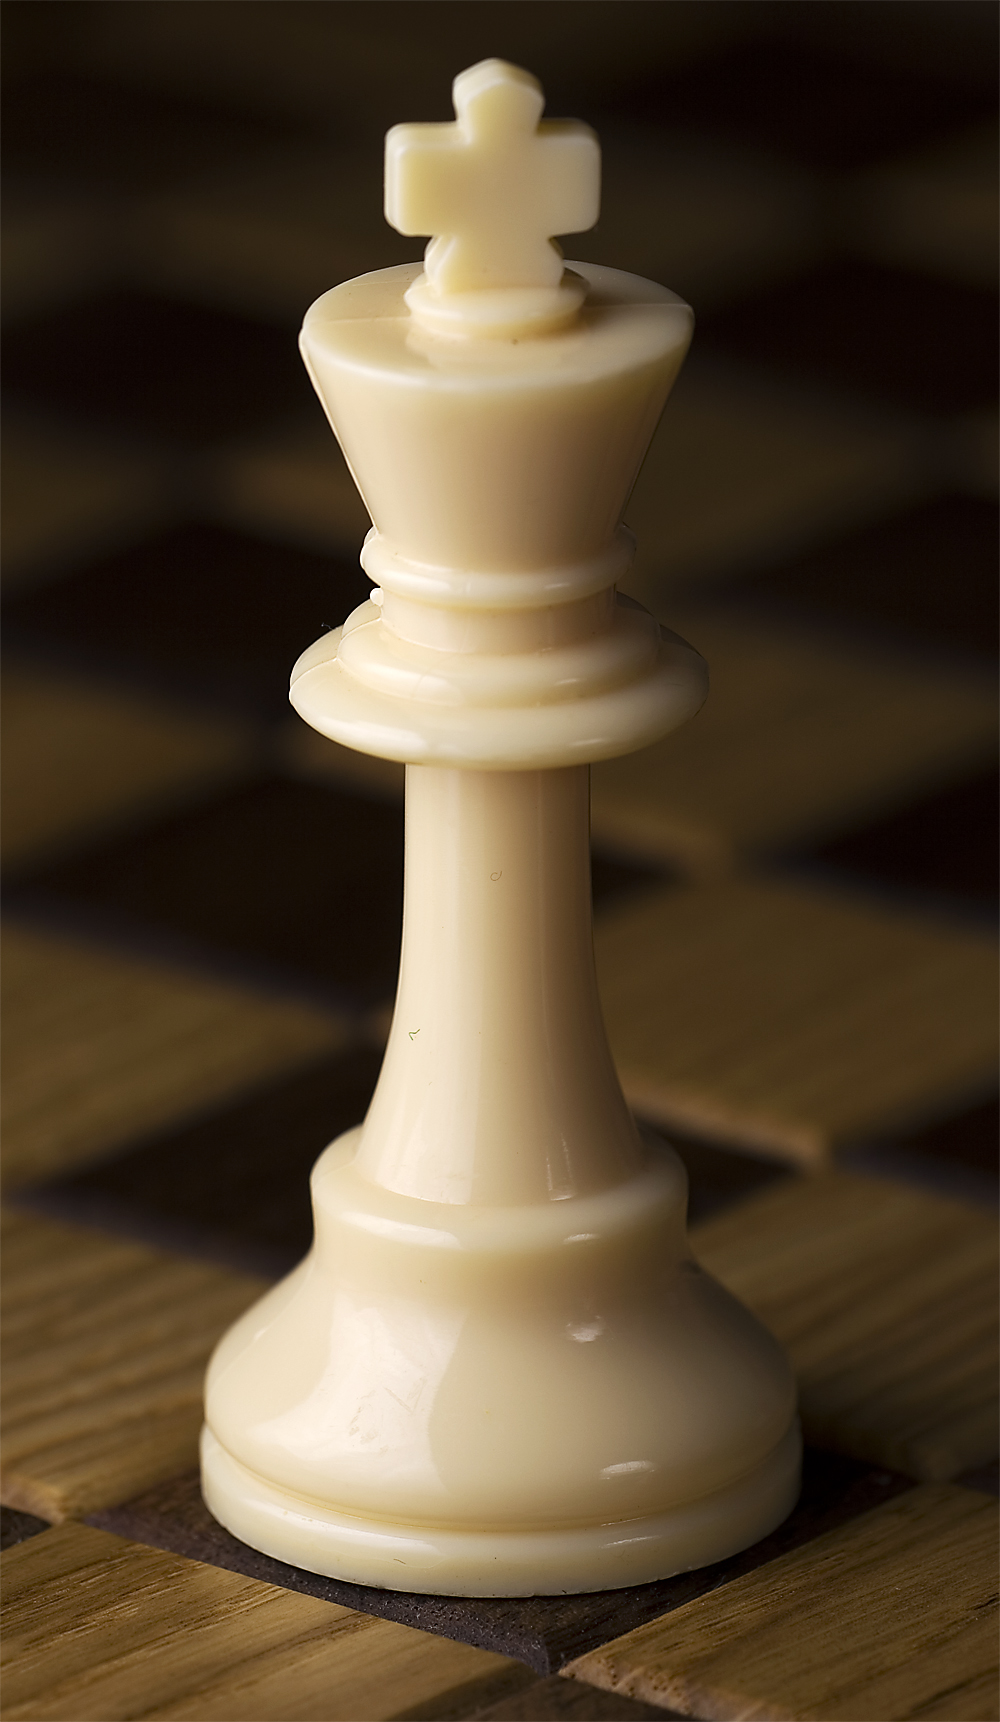 imagem da peça rei, do jogo de xadrez, do site http://it.wikipedia.org/wiki/Re_(scacchi)